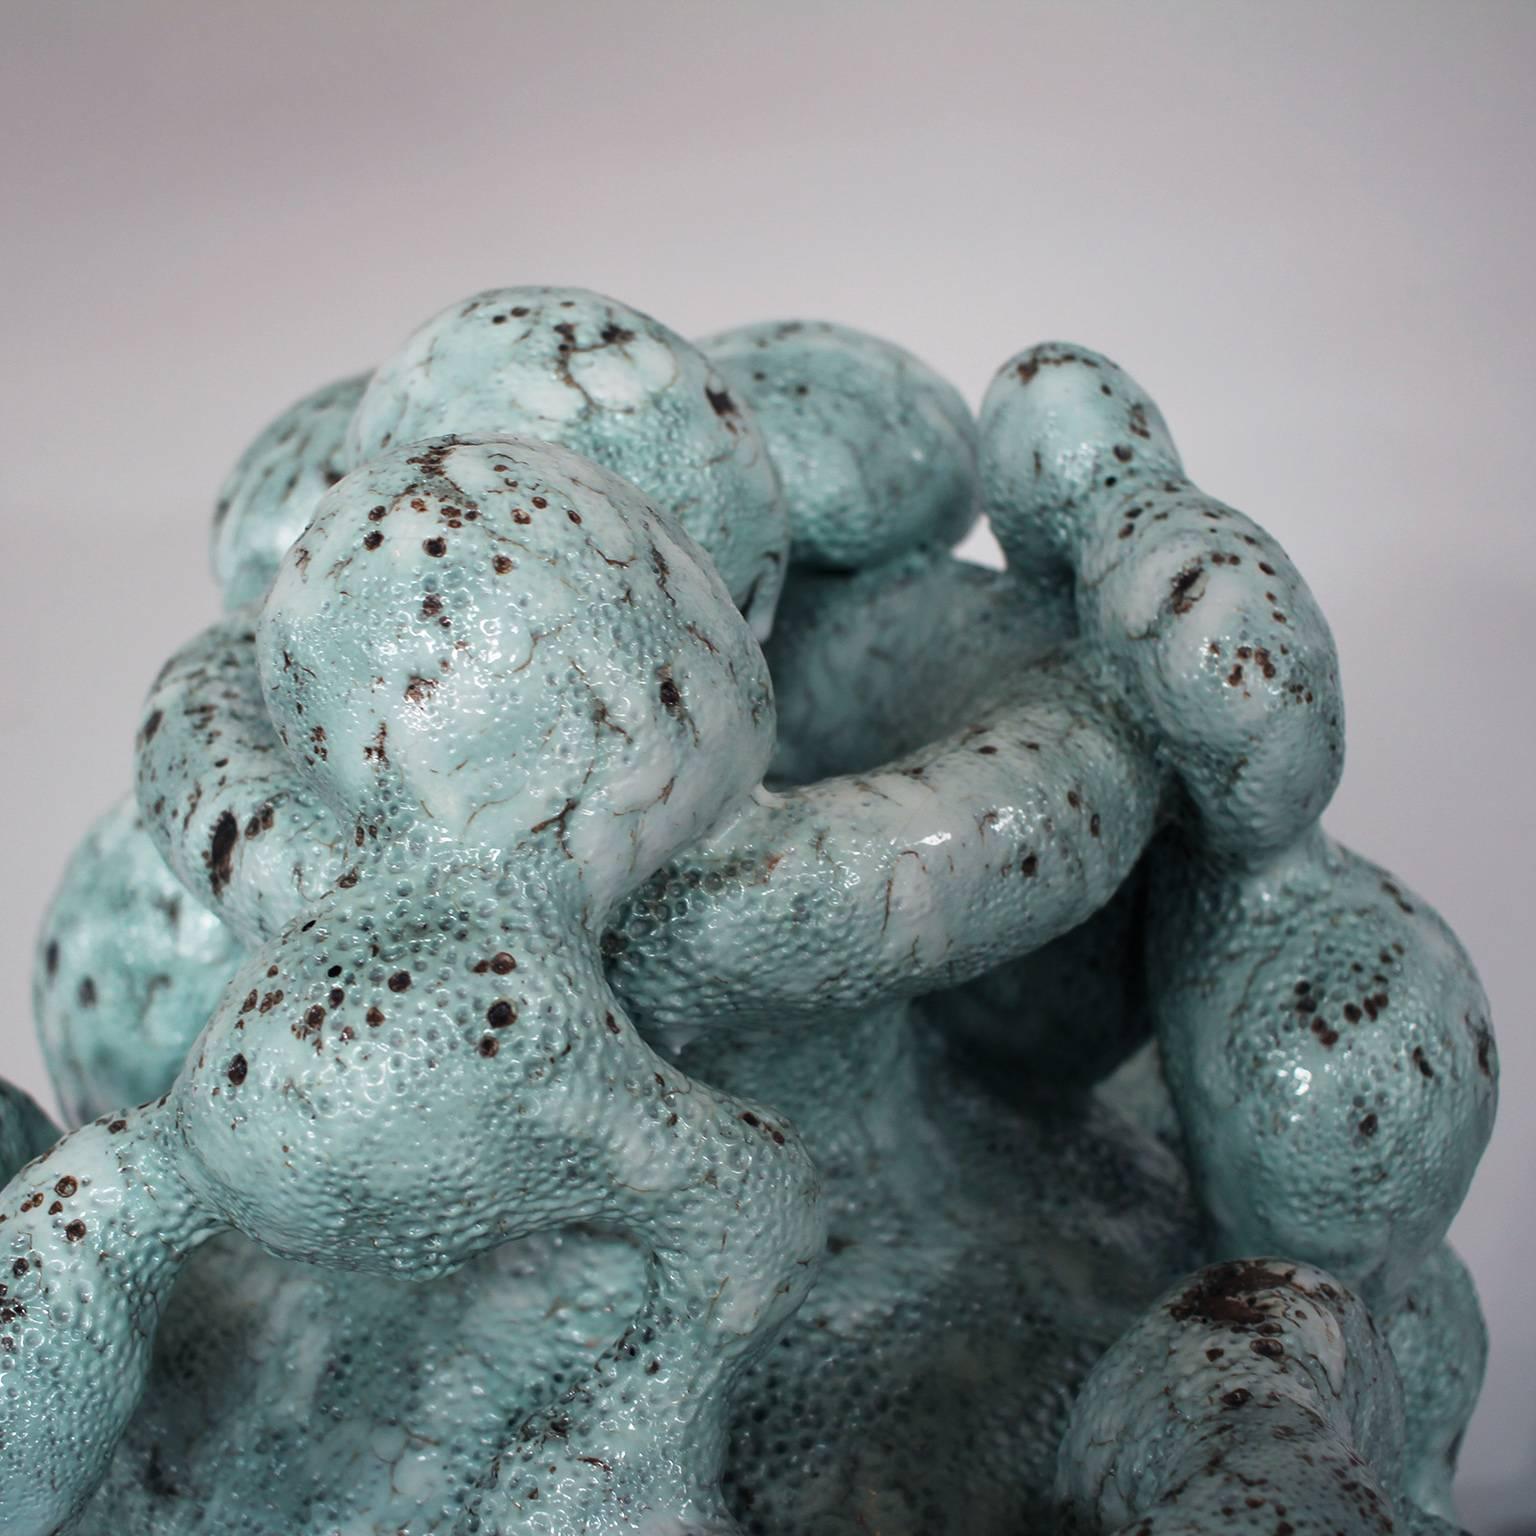 Stoneware Horror Vacui in Vert De Gris Sculptural Vessel by Morten Løbner Espersen